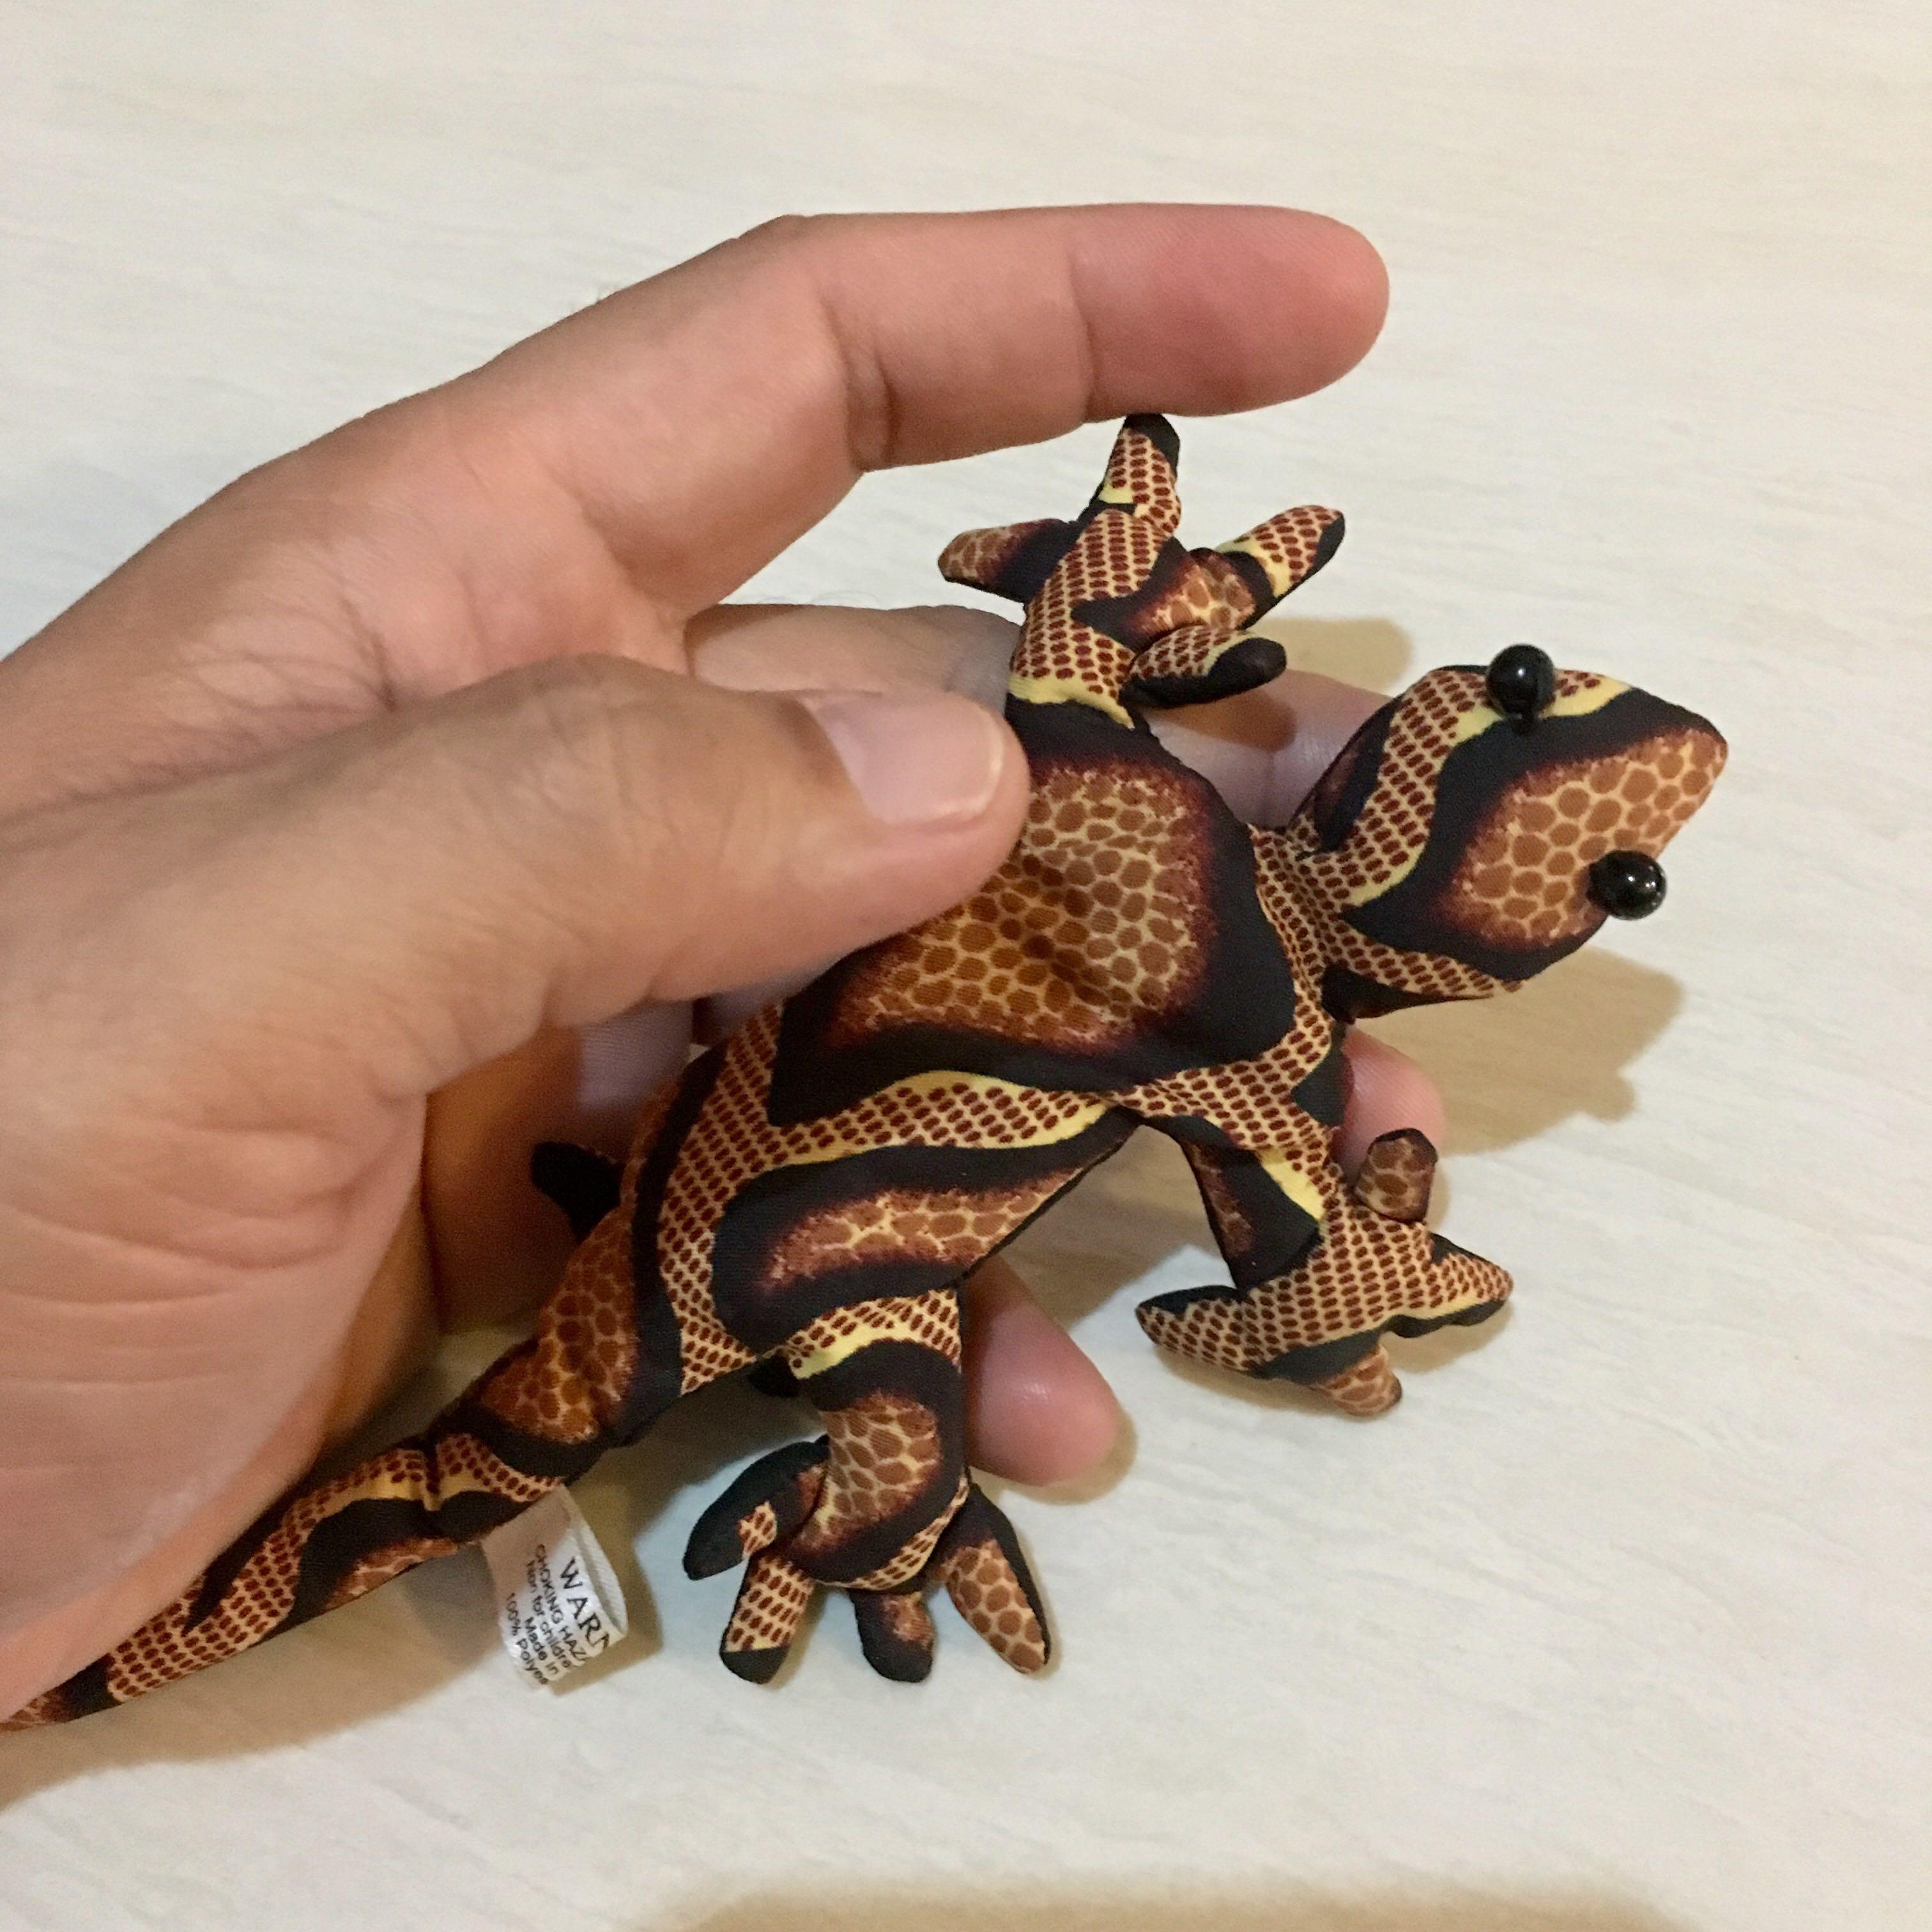 sand lizard toy